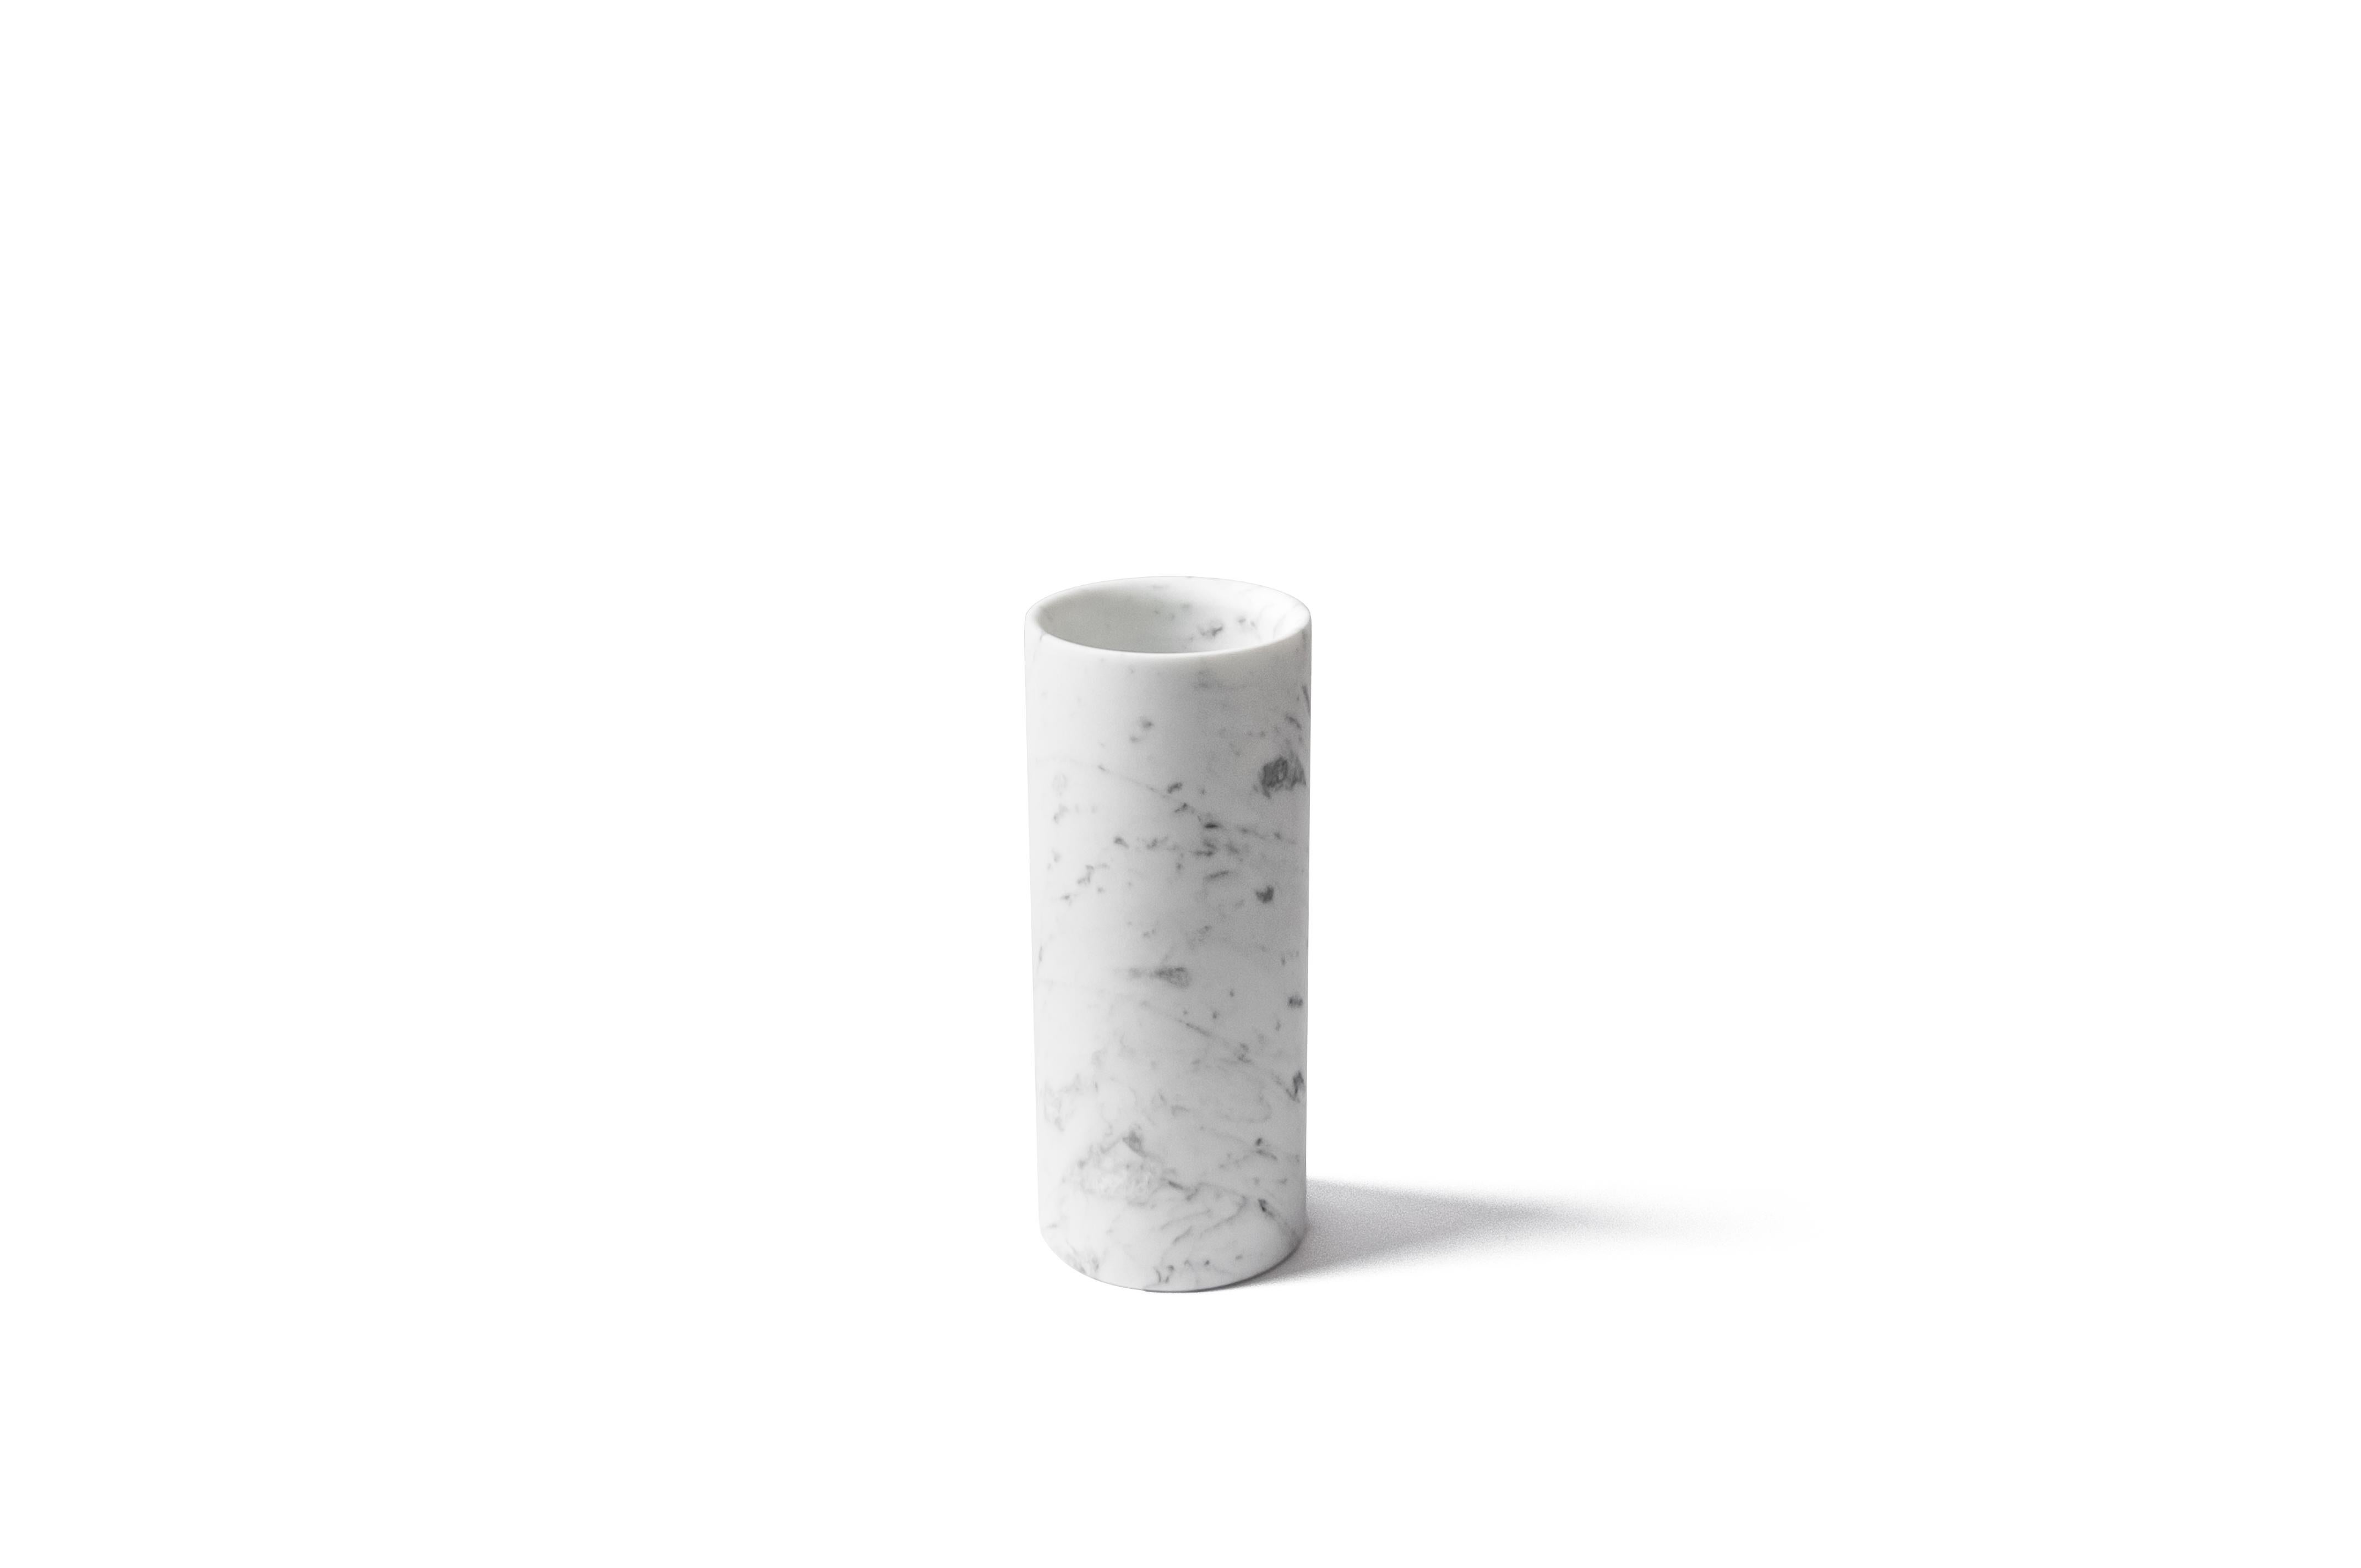 Vase cylindrique en marbre blanc satiné de Carrara fabriqué en Italie, Carrara.
Chaque pièce est en quelque sorte unique (puisque chaque bloc de marbre est différent par ses veines et ses nuances) et fabriquée à la main en Italie. Les légères